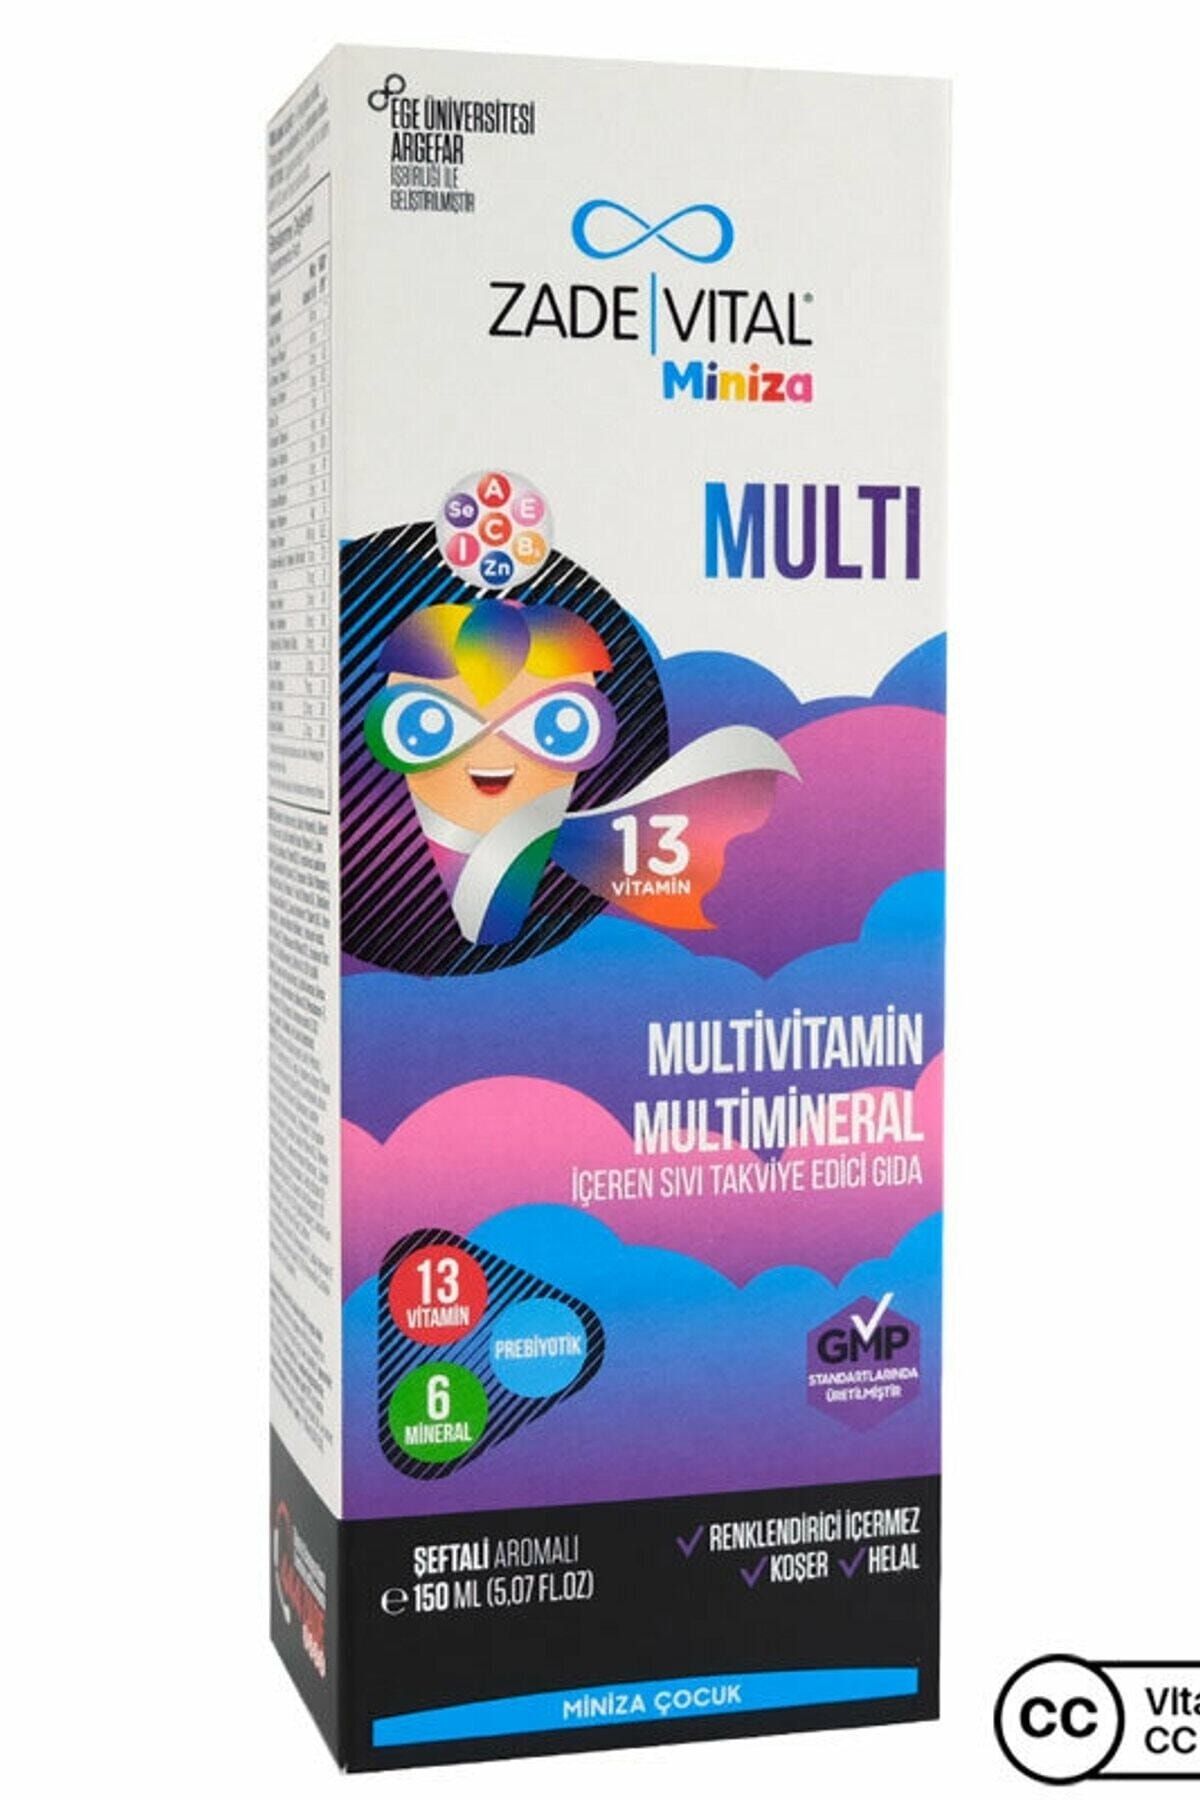 Zade Vital Miniza Multivitamin Ve Multimineral 150 Ml Şeftali